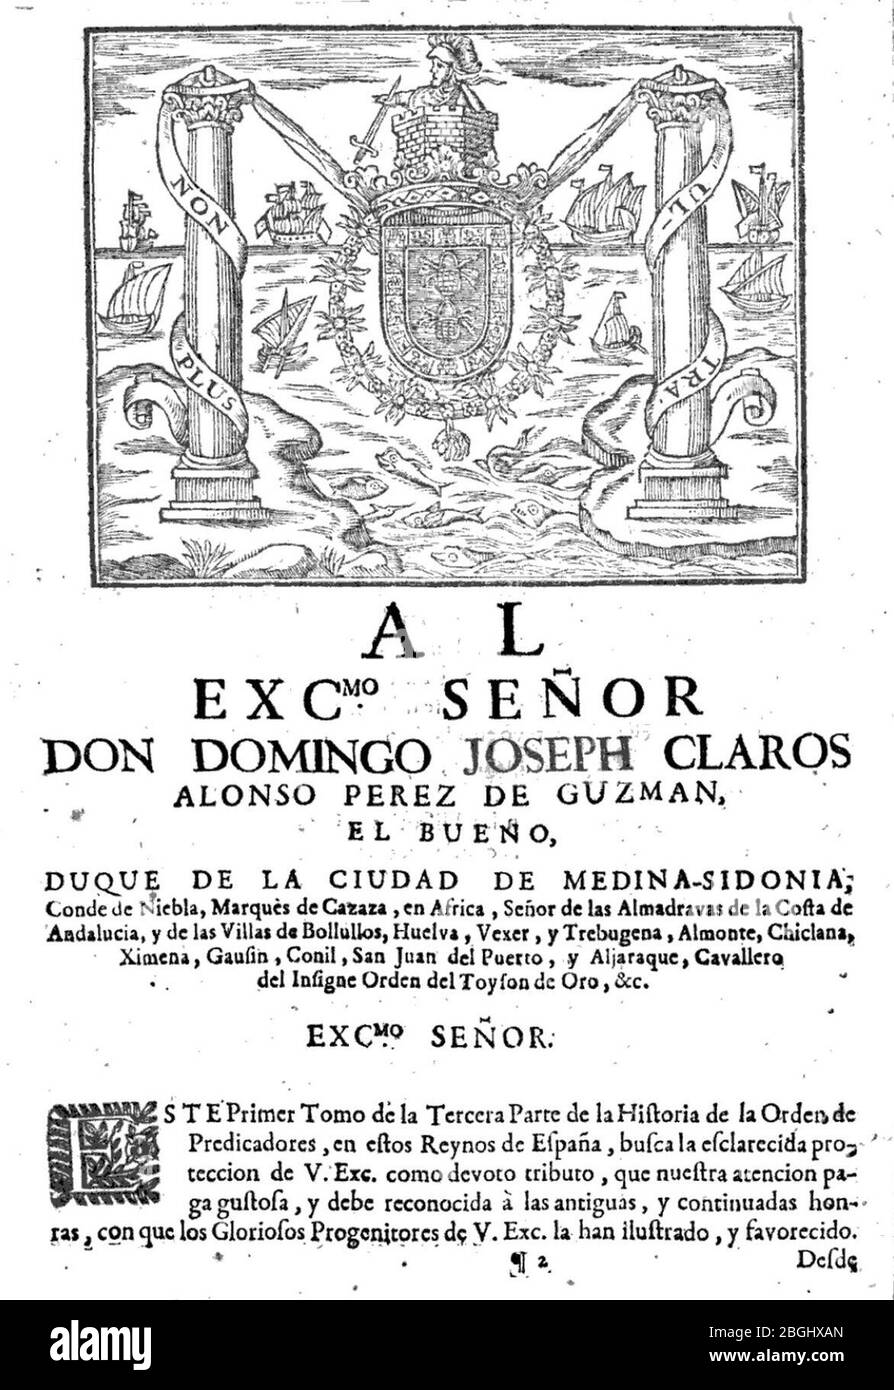 Historia de la provincia de España de la Orden de los Predicadores (dedicatoria). Stock Photo